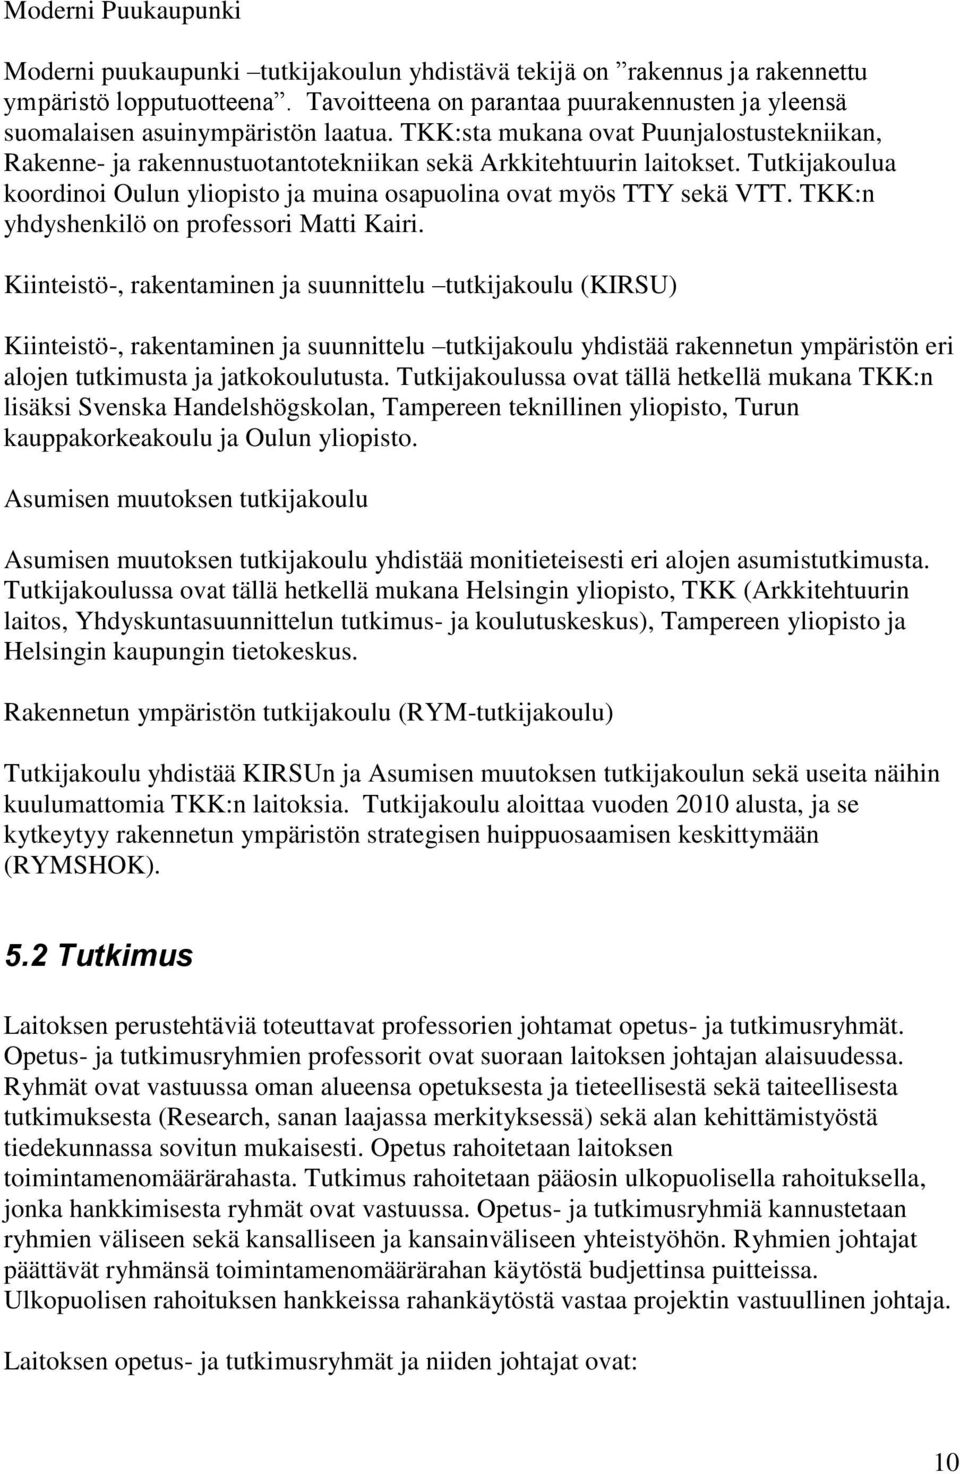 Tutkijakoulua koordinoi Oulun yliopisto ja muina osapuolina ovat myös TTY sekä VTT. TKK:n yhdyshenkilö on professori Matti Kairi.